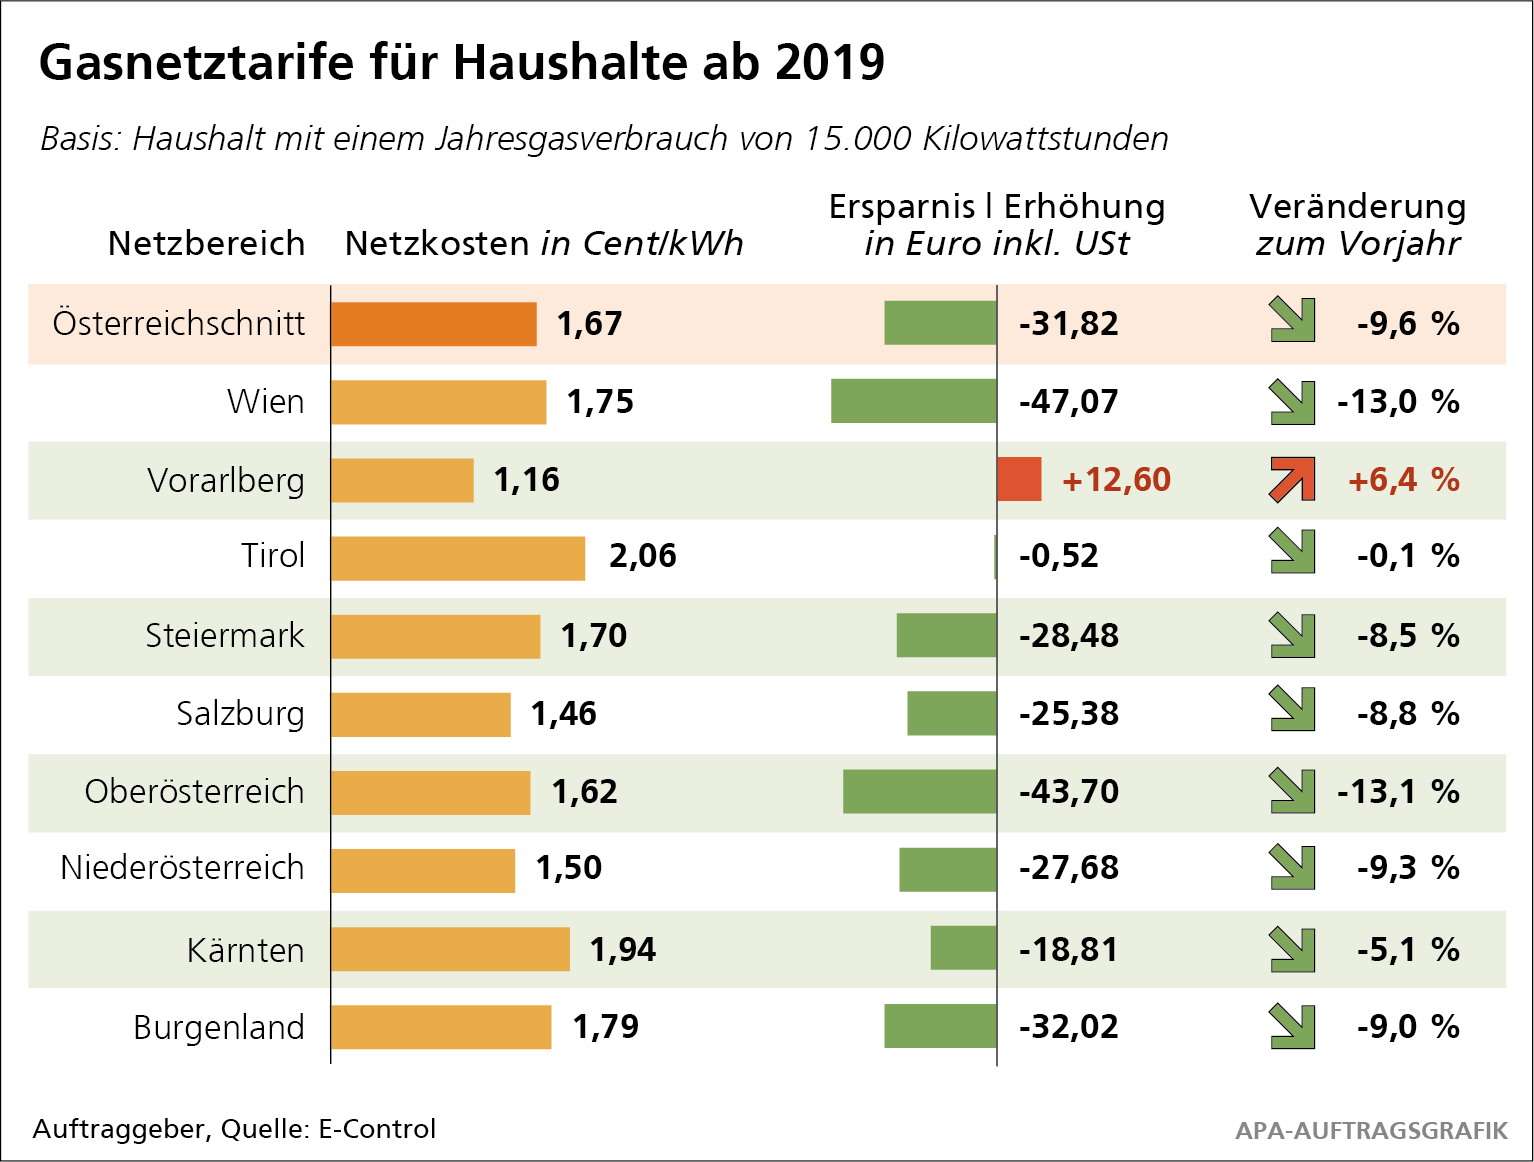 Die heimischen Gaskunden können sich über sinkende Gasnetzentgelte freuen, lediglich in Vorarlberg steigen die Gasnetzentgelte für Haushalte im Jahr 2019. 